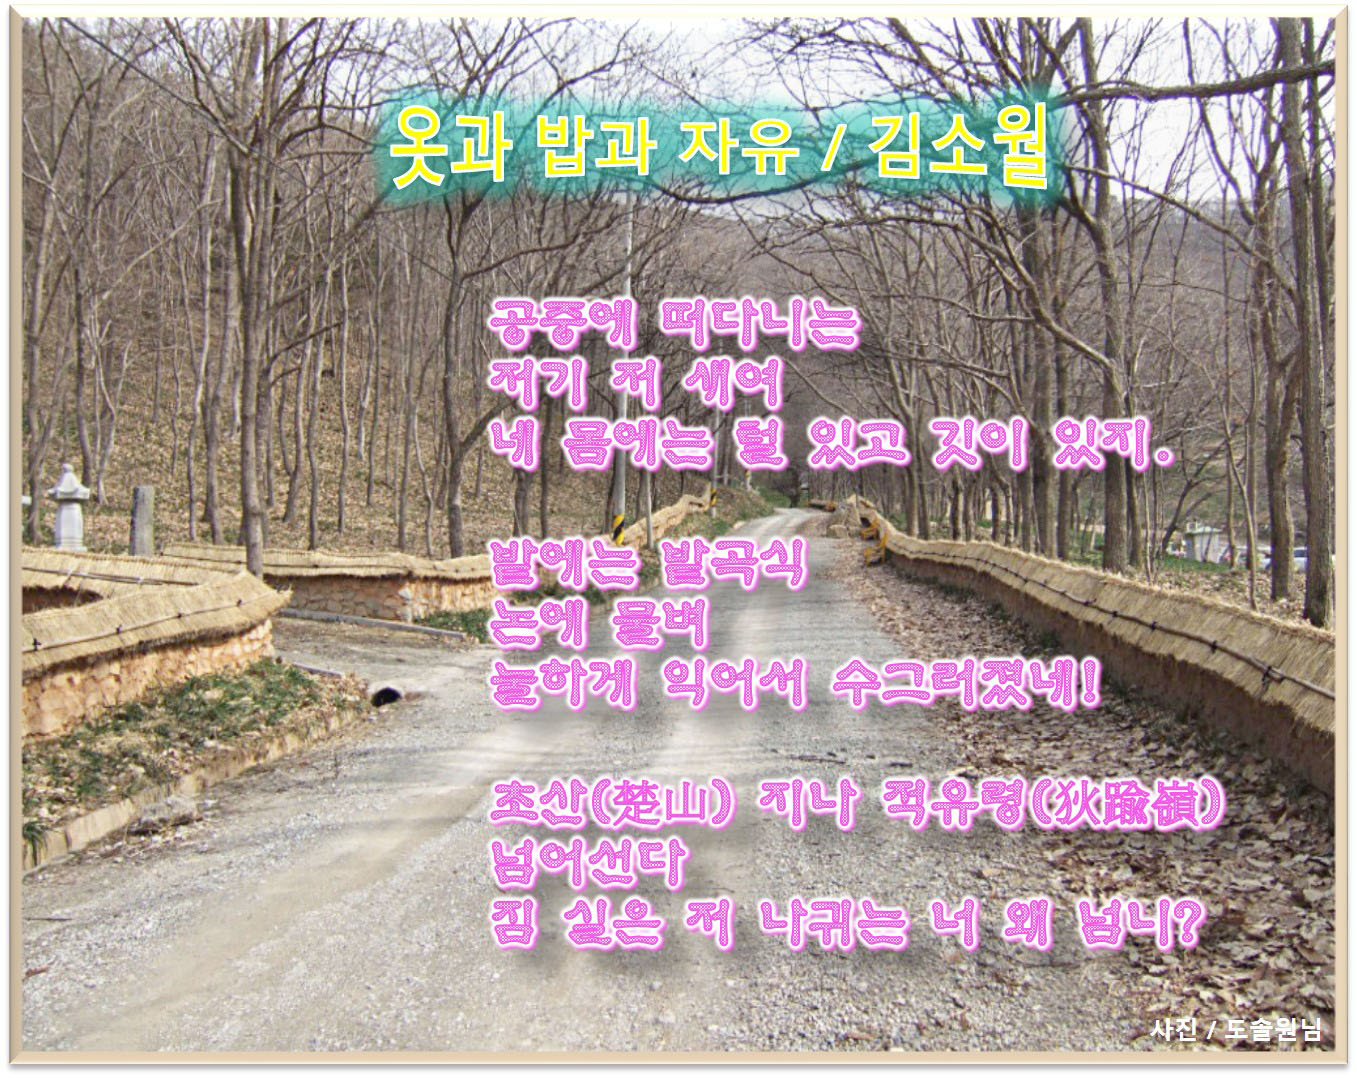 이 글은 파워포인트에서 만든 이미지입니다.  옷과 밥과 자유  /  김소월